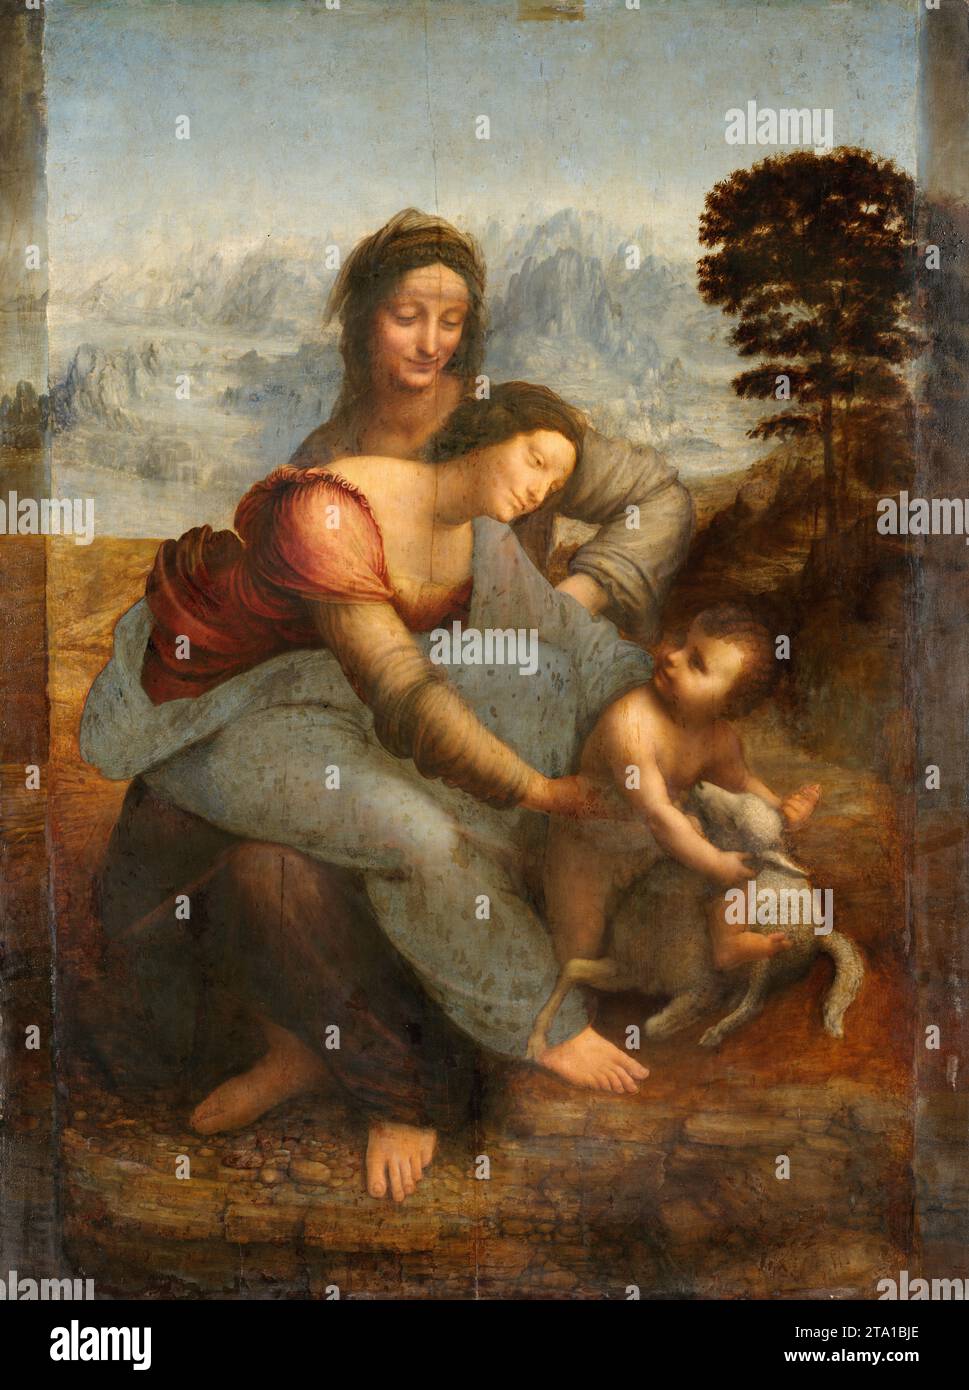 Pittura di Leonardo da Vinci - Sainte Anne, la Vierge et l'Enfant Jésus jouant avec un agneau. C 1501-1519 Foto Stock